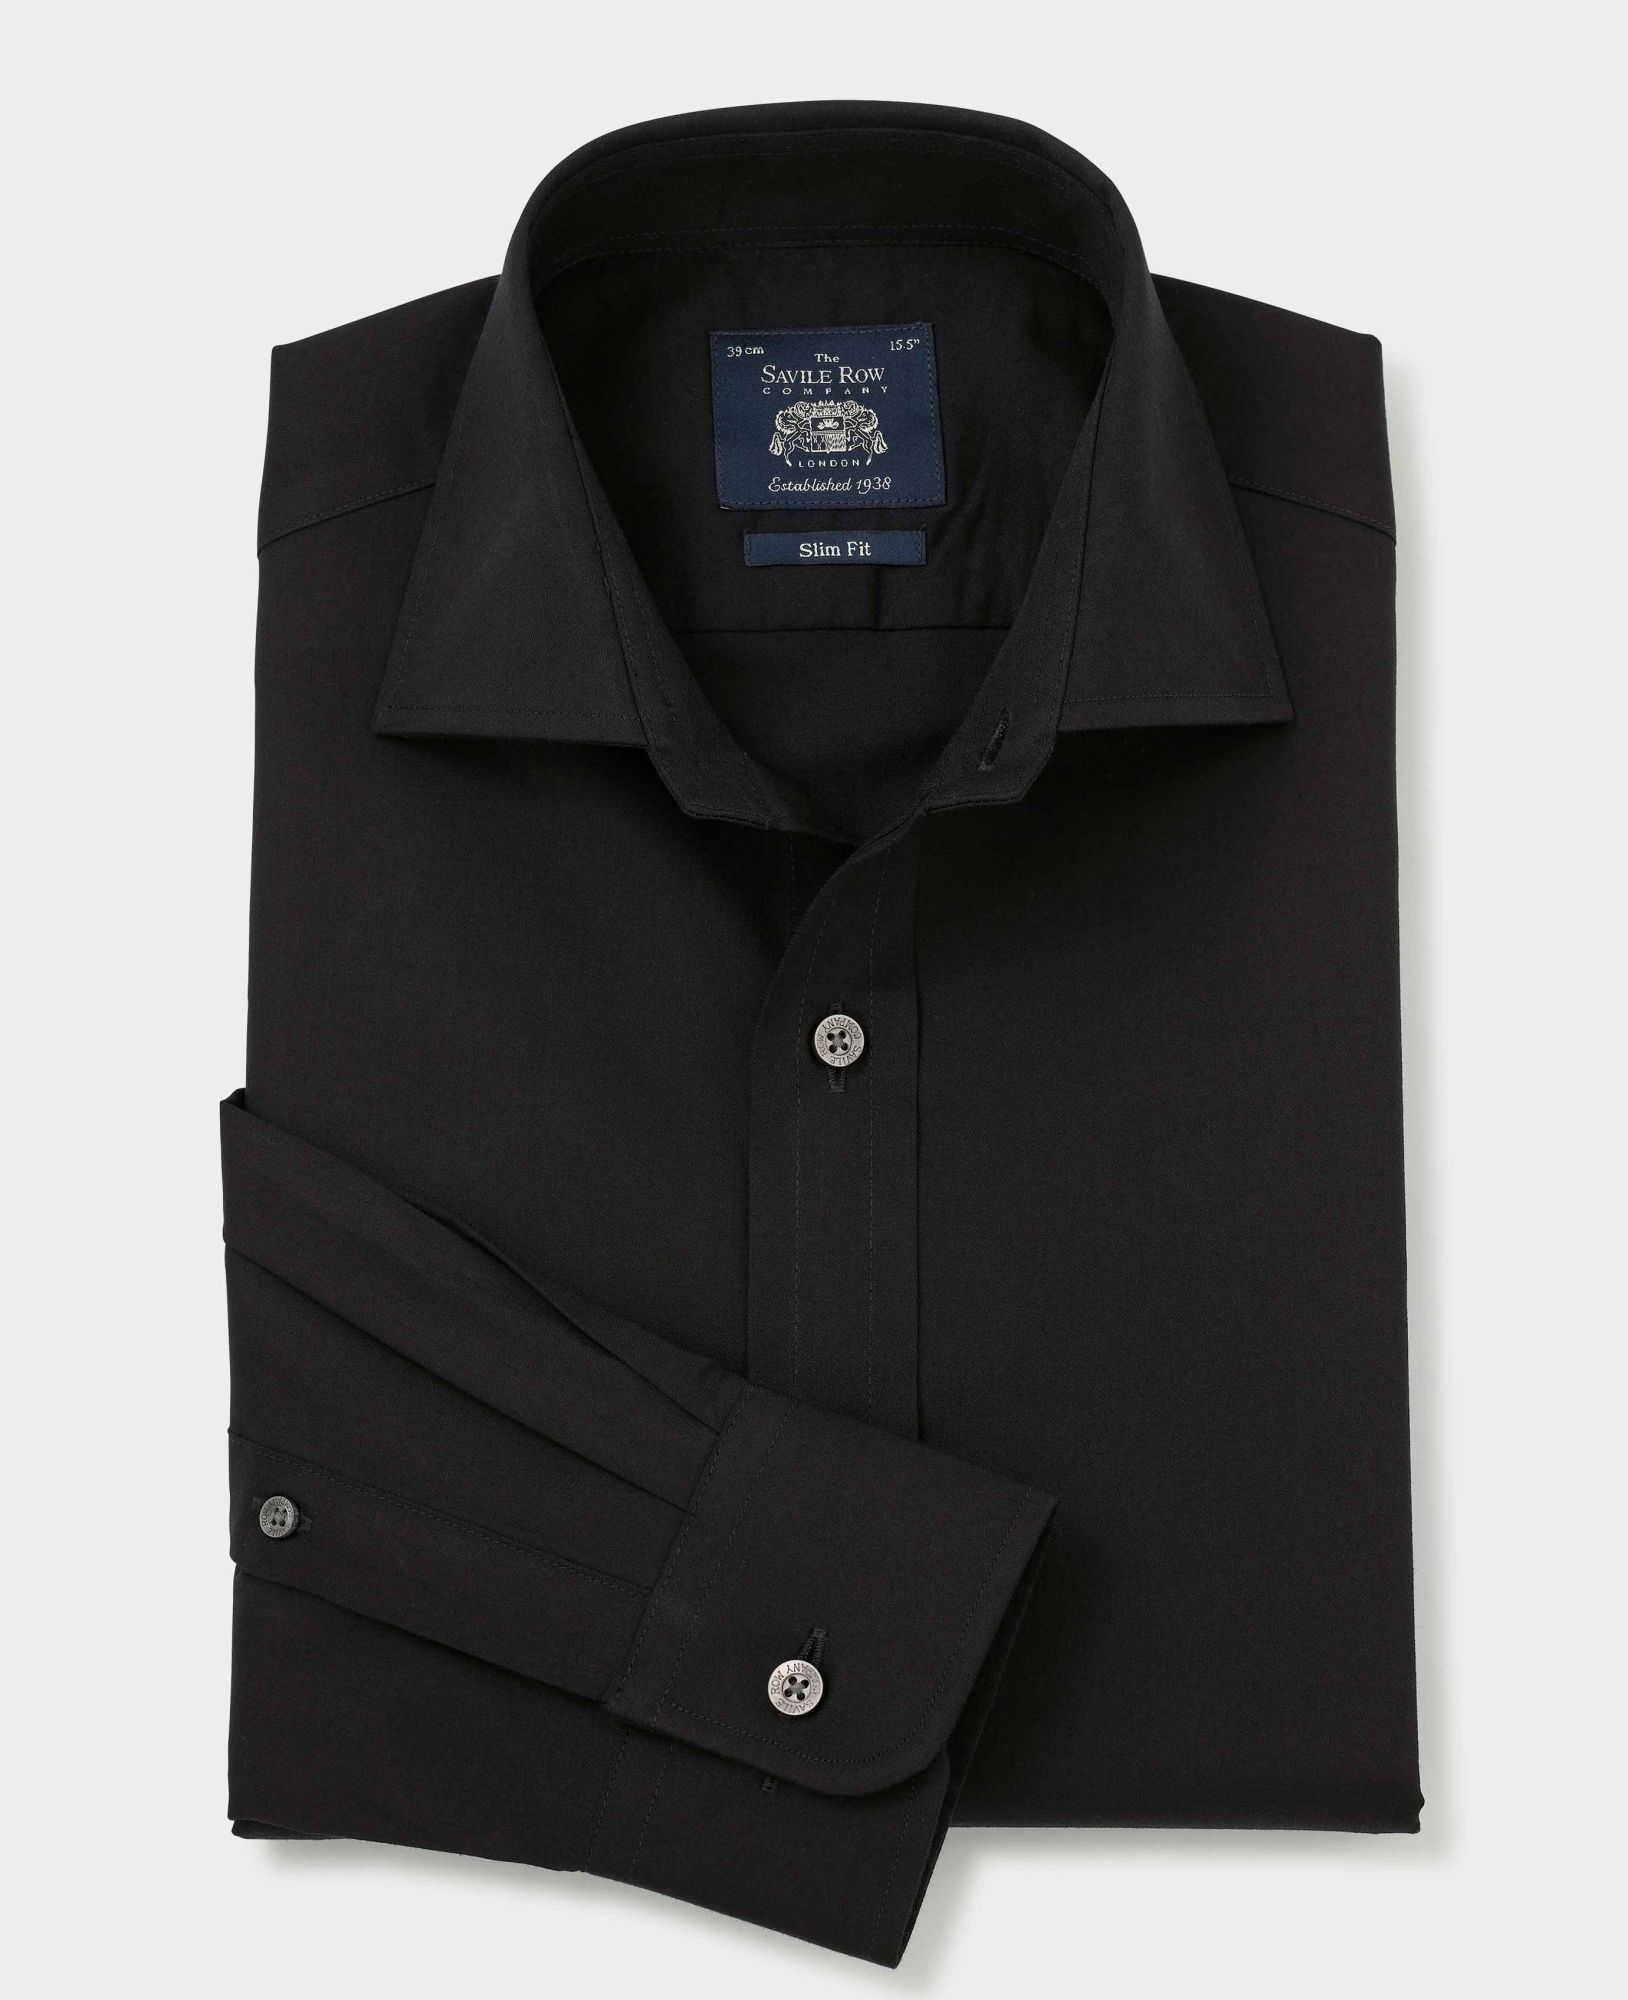 Black Fine Twill Slim Fit Shirt - Single Cuff 16 1/2